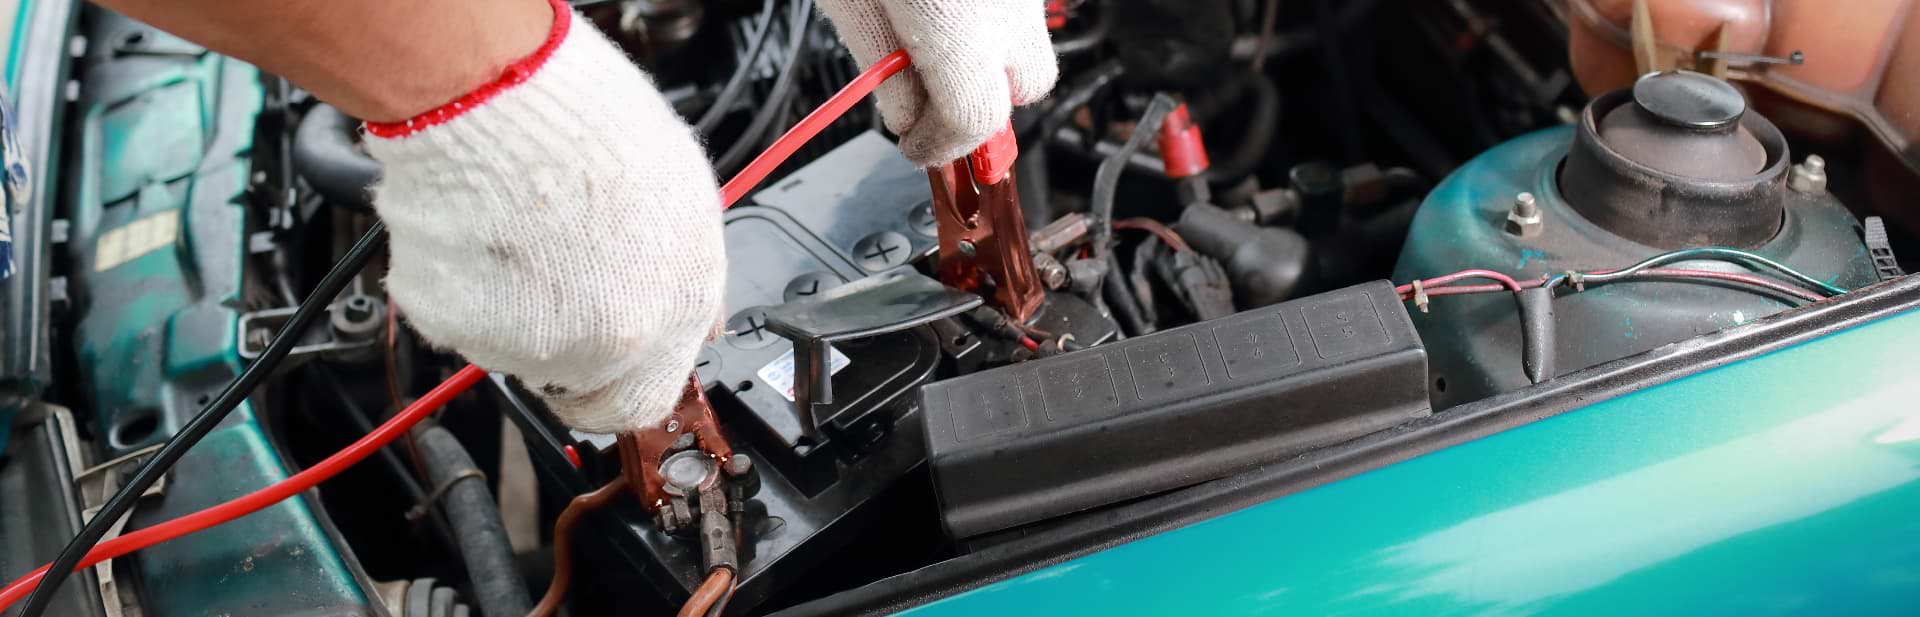 Car Electrical Repairs